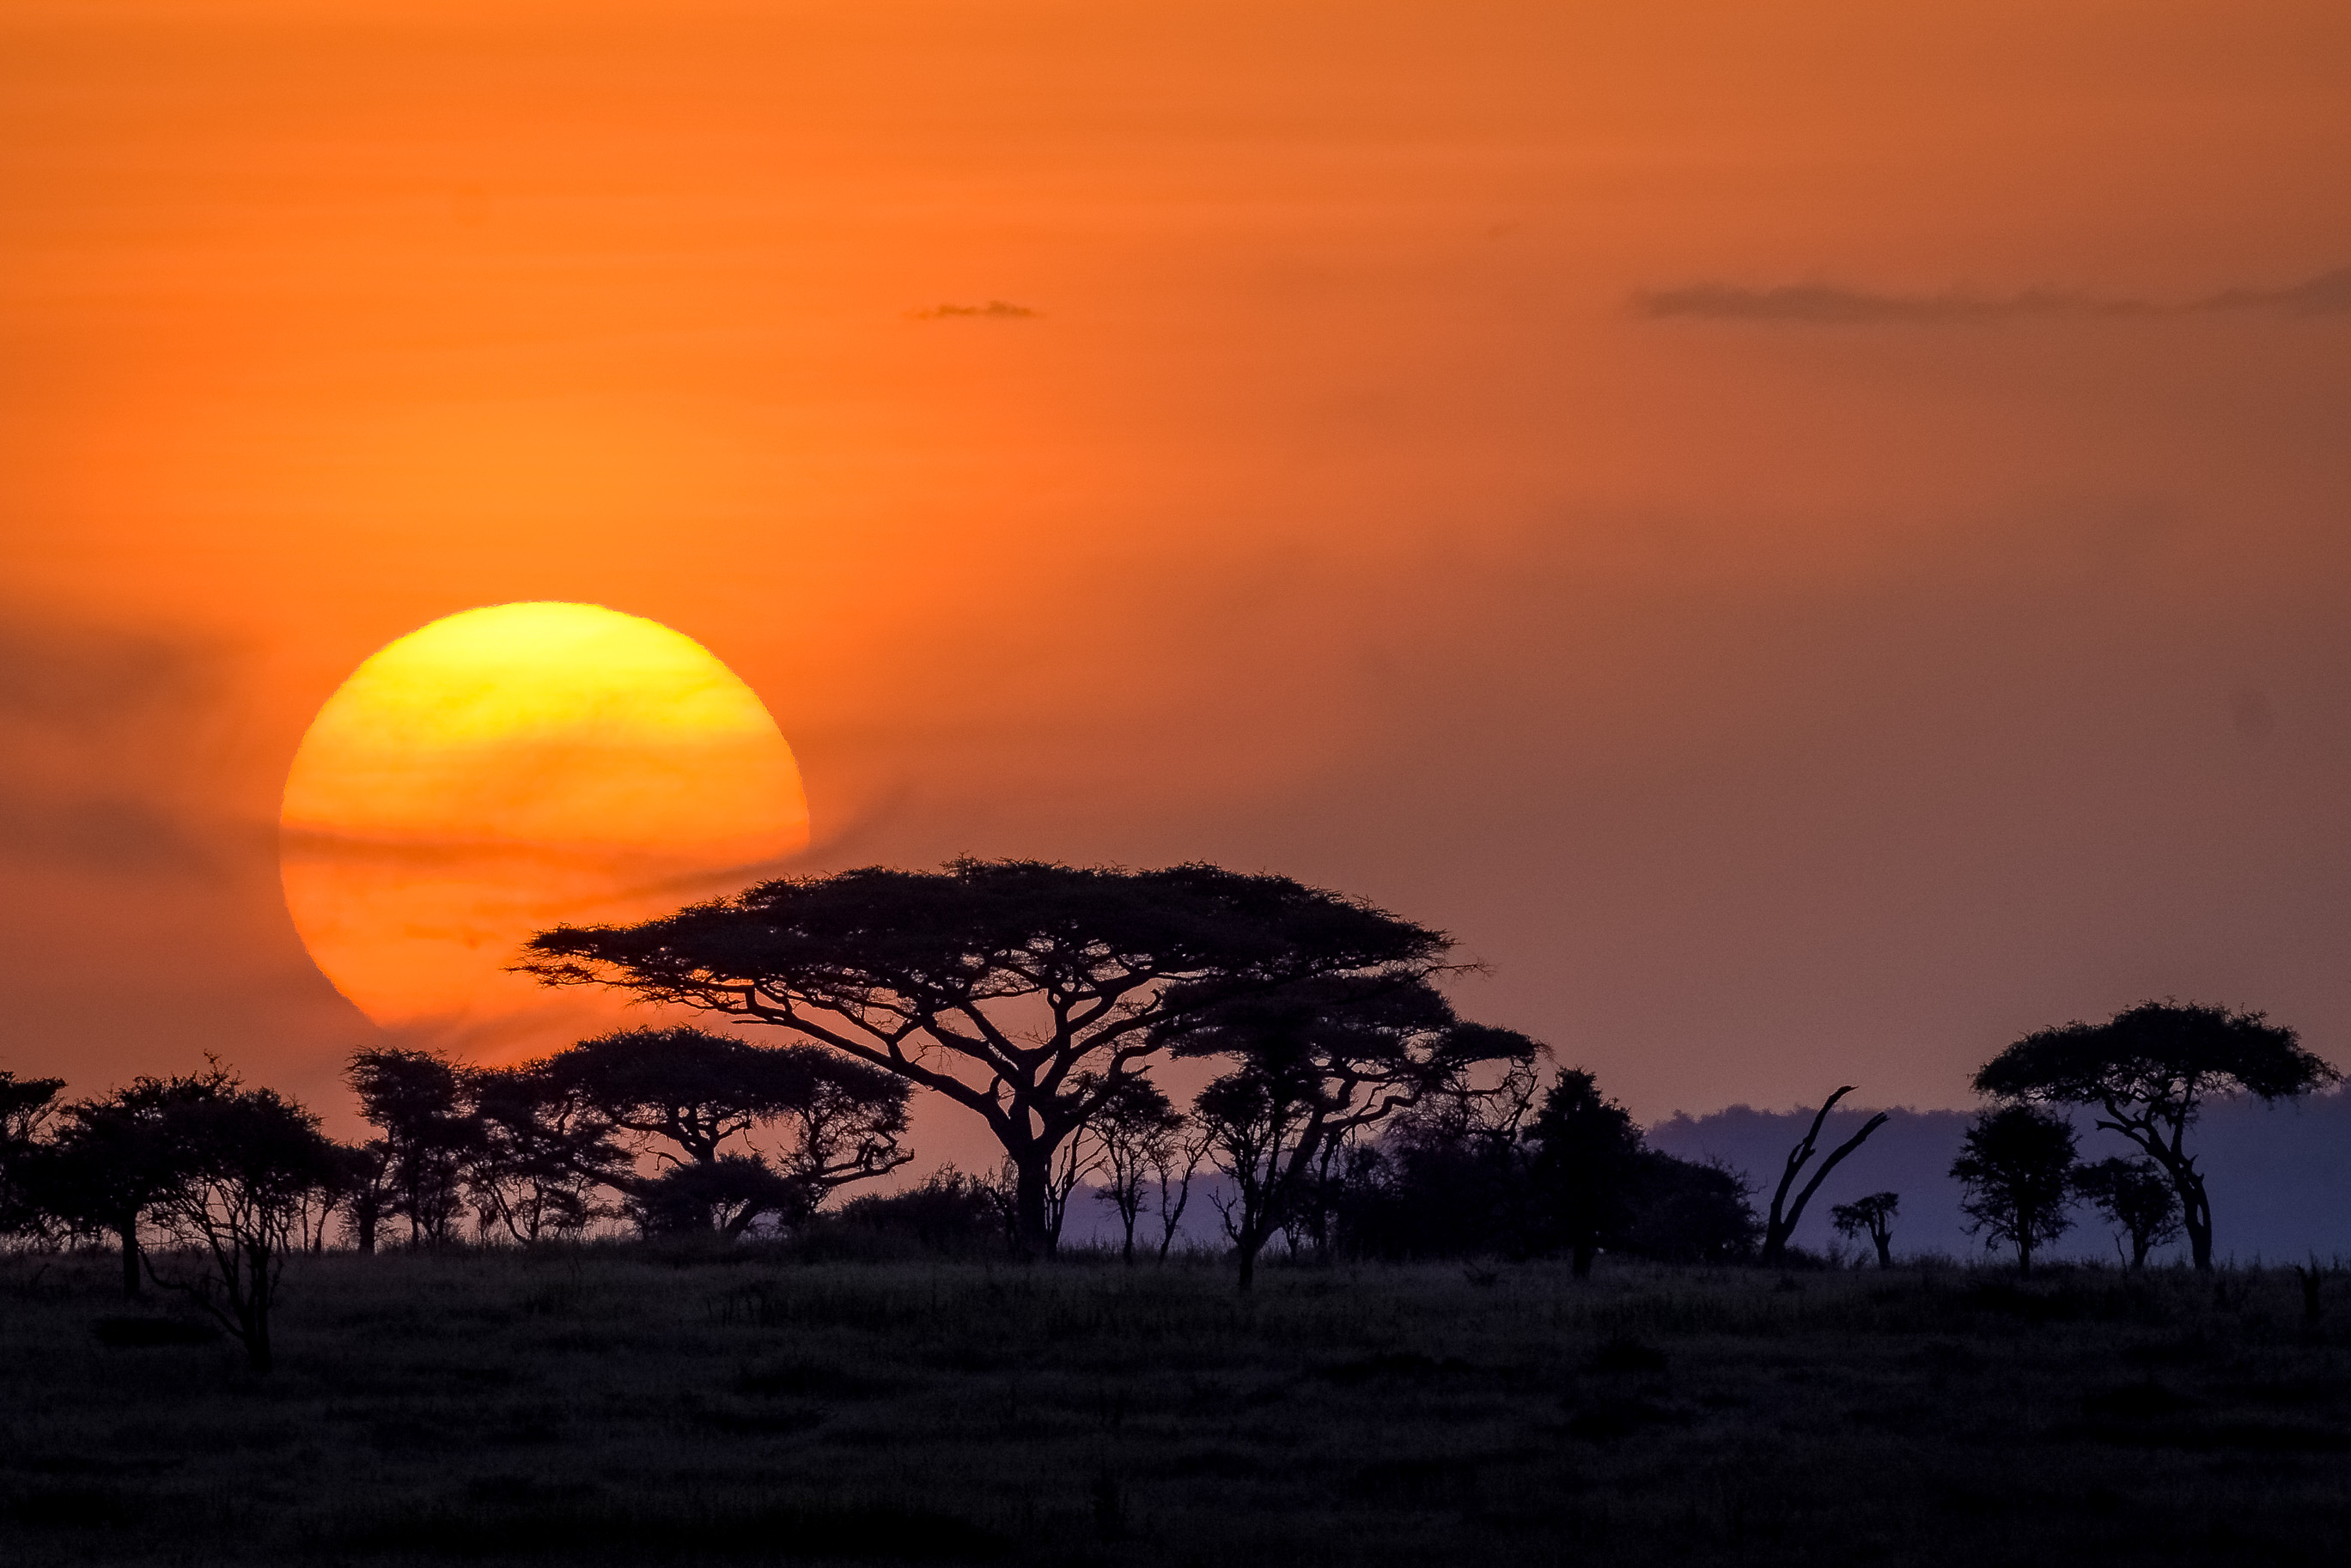 File:Serengeti sunset-1001.jpg - Wikimedia Commons